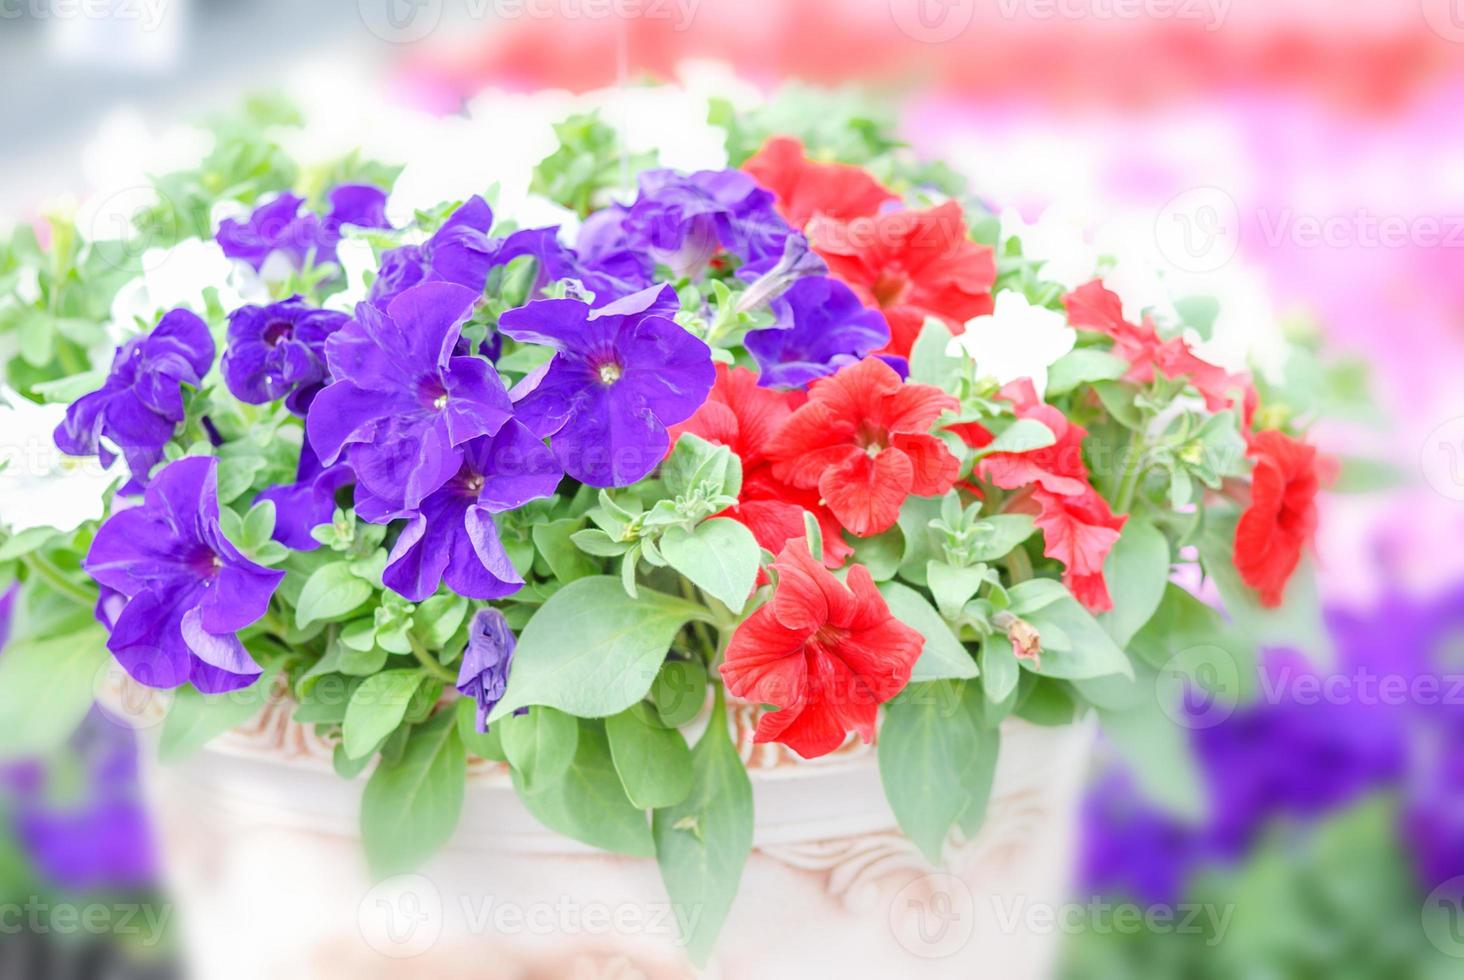 coloridas flores de petunia, grandiflora es la variedad más popular de petunia, con grandes flores simples o dobles que forman montículos de coloridas flores sólidas, rayadas o abigarradas. foto